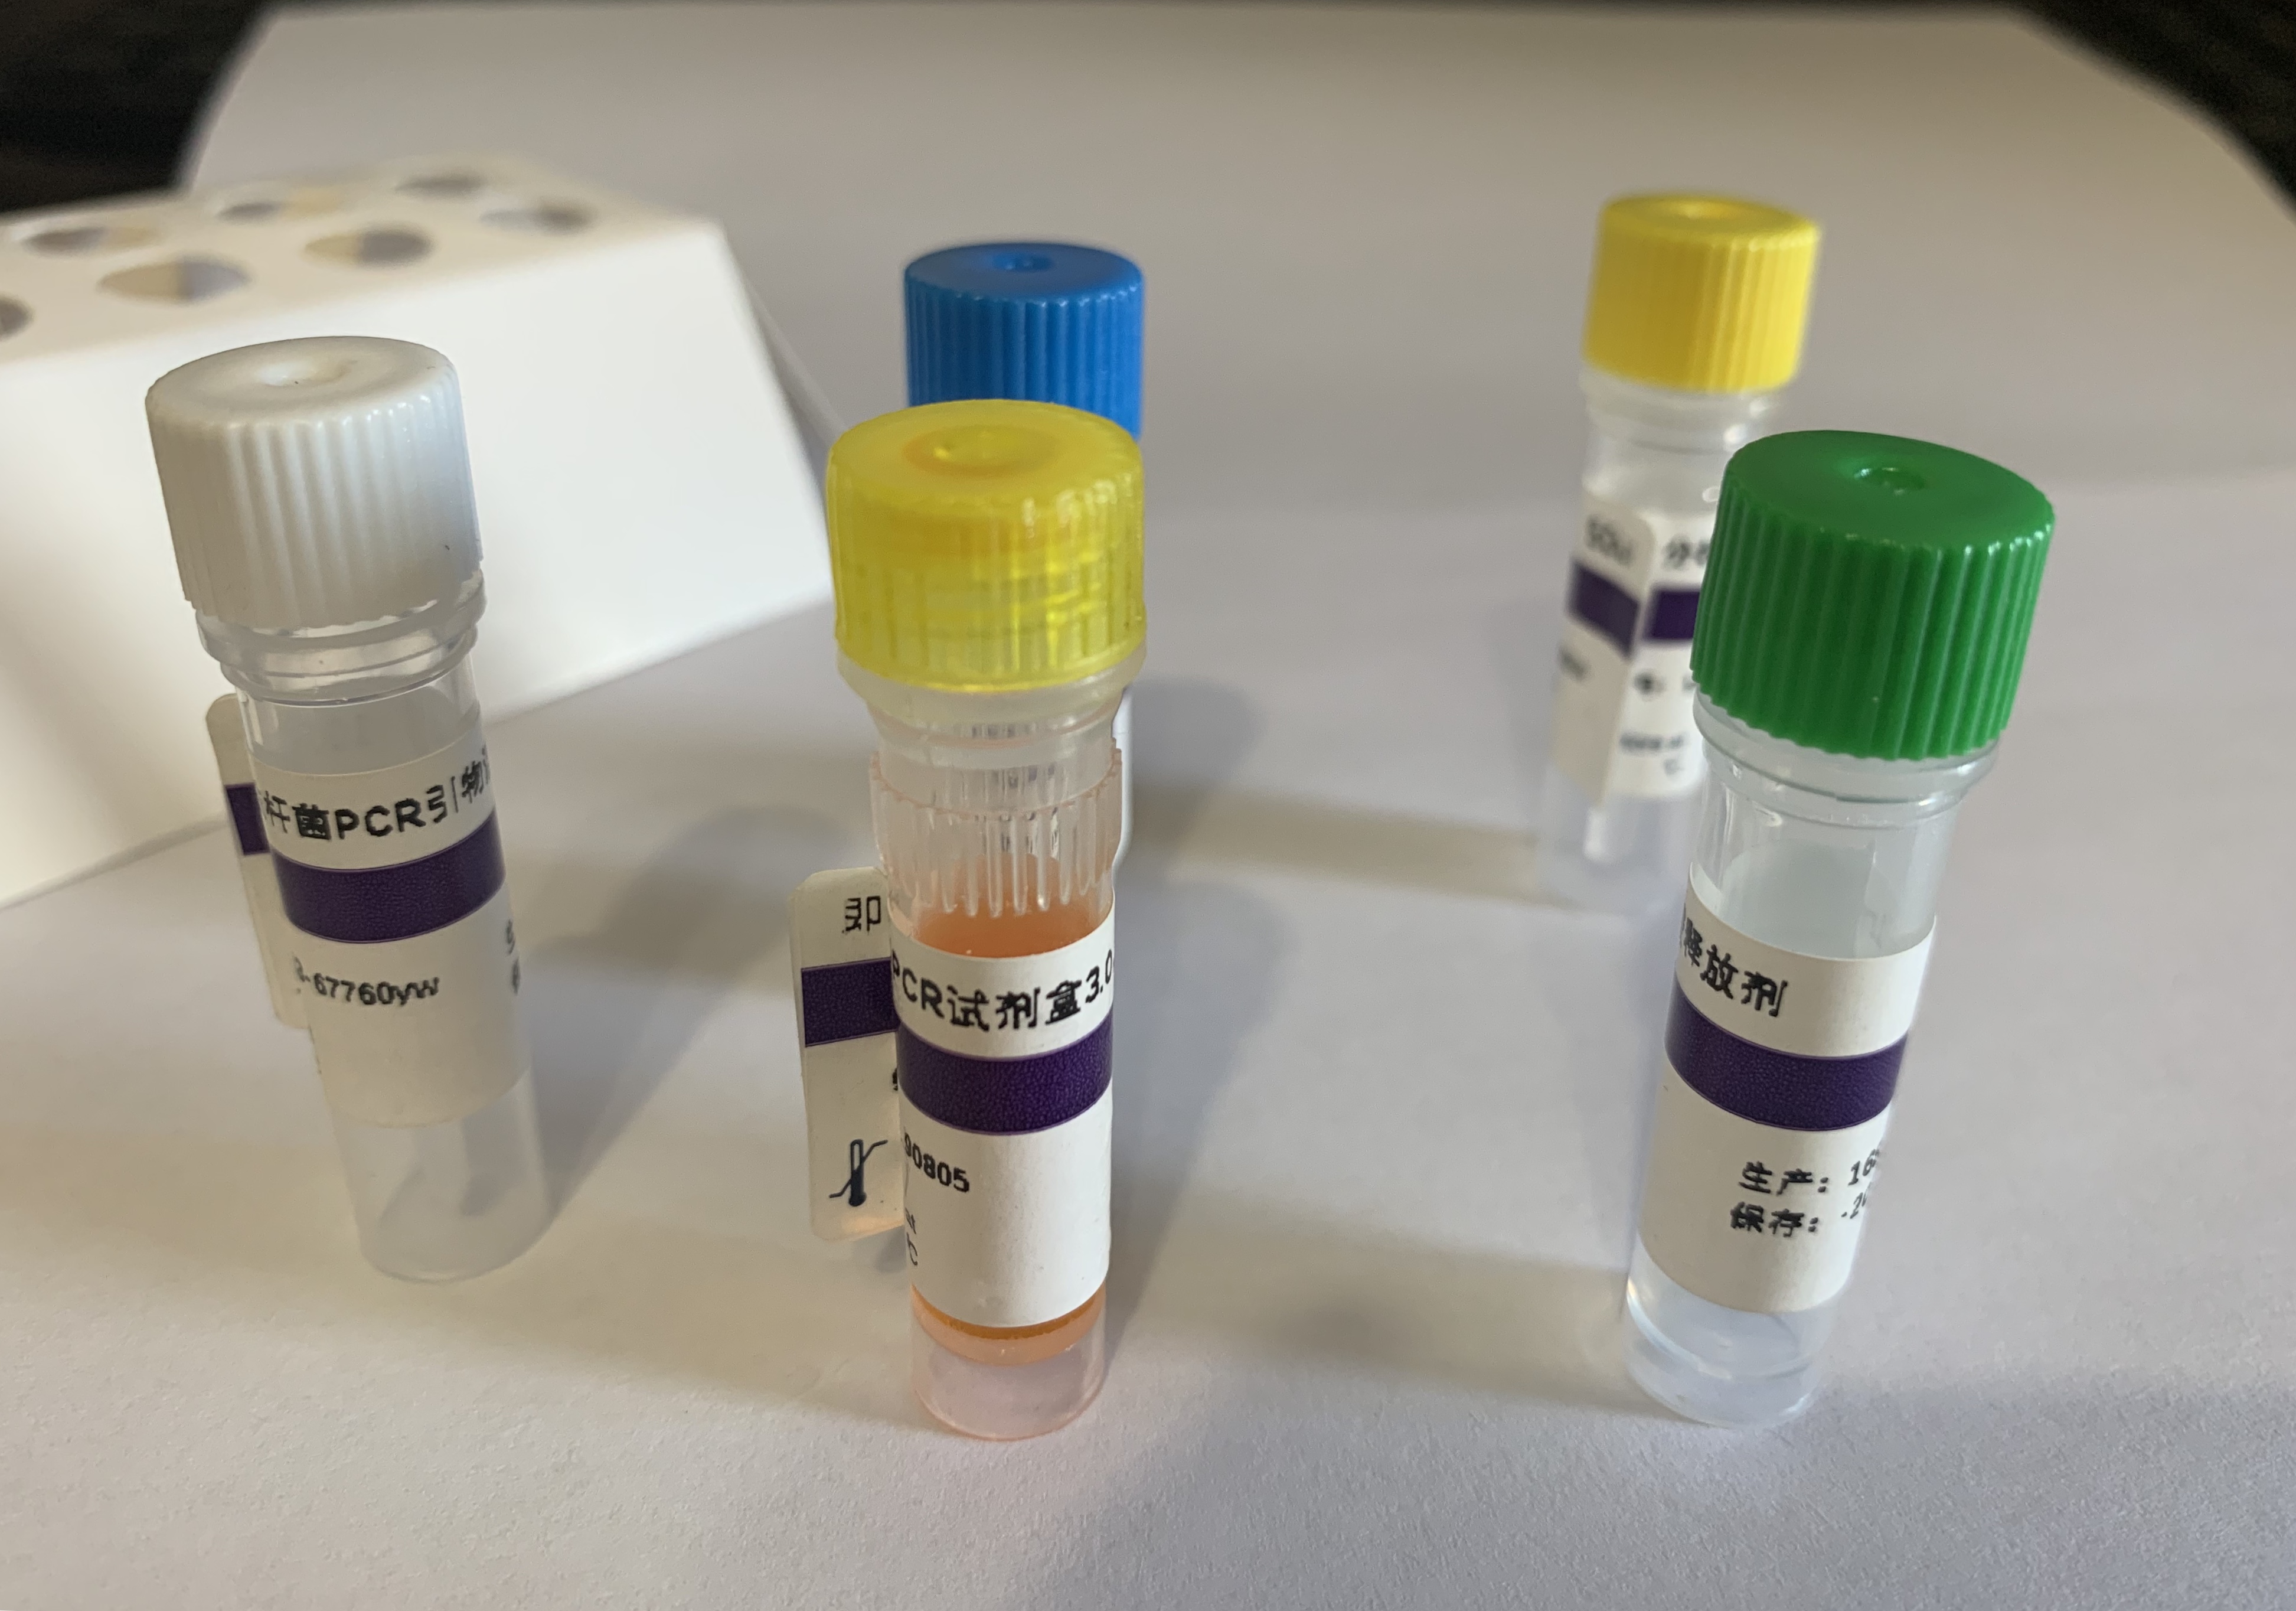 羊巴贝斯虫探针法荧光定量PCR试剂盒